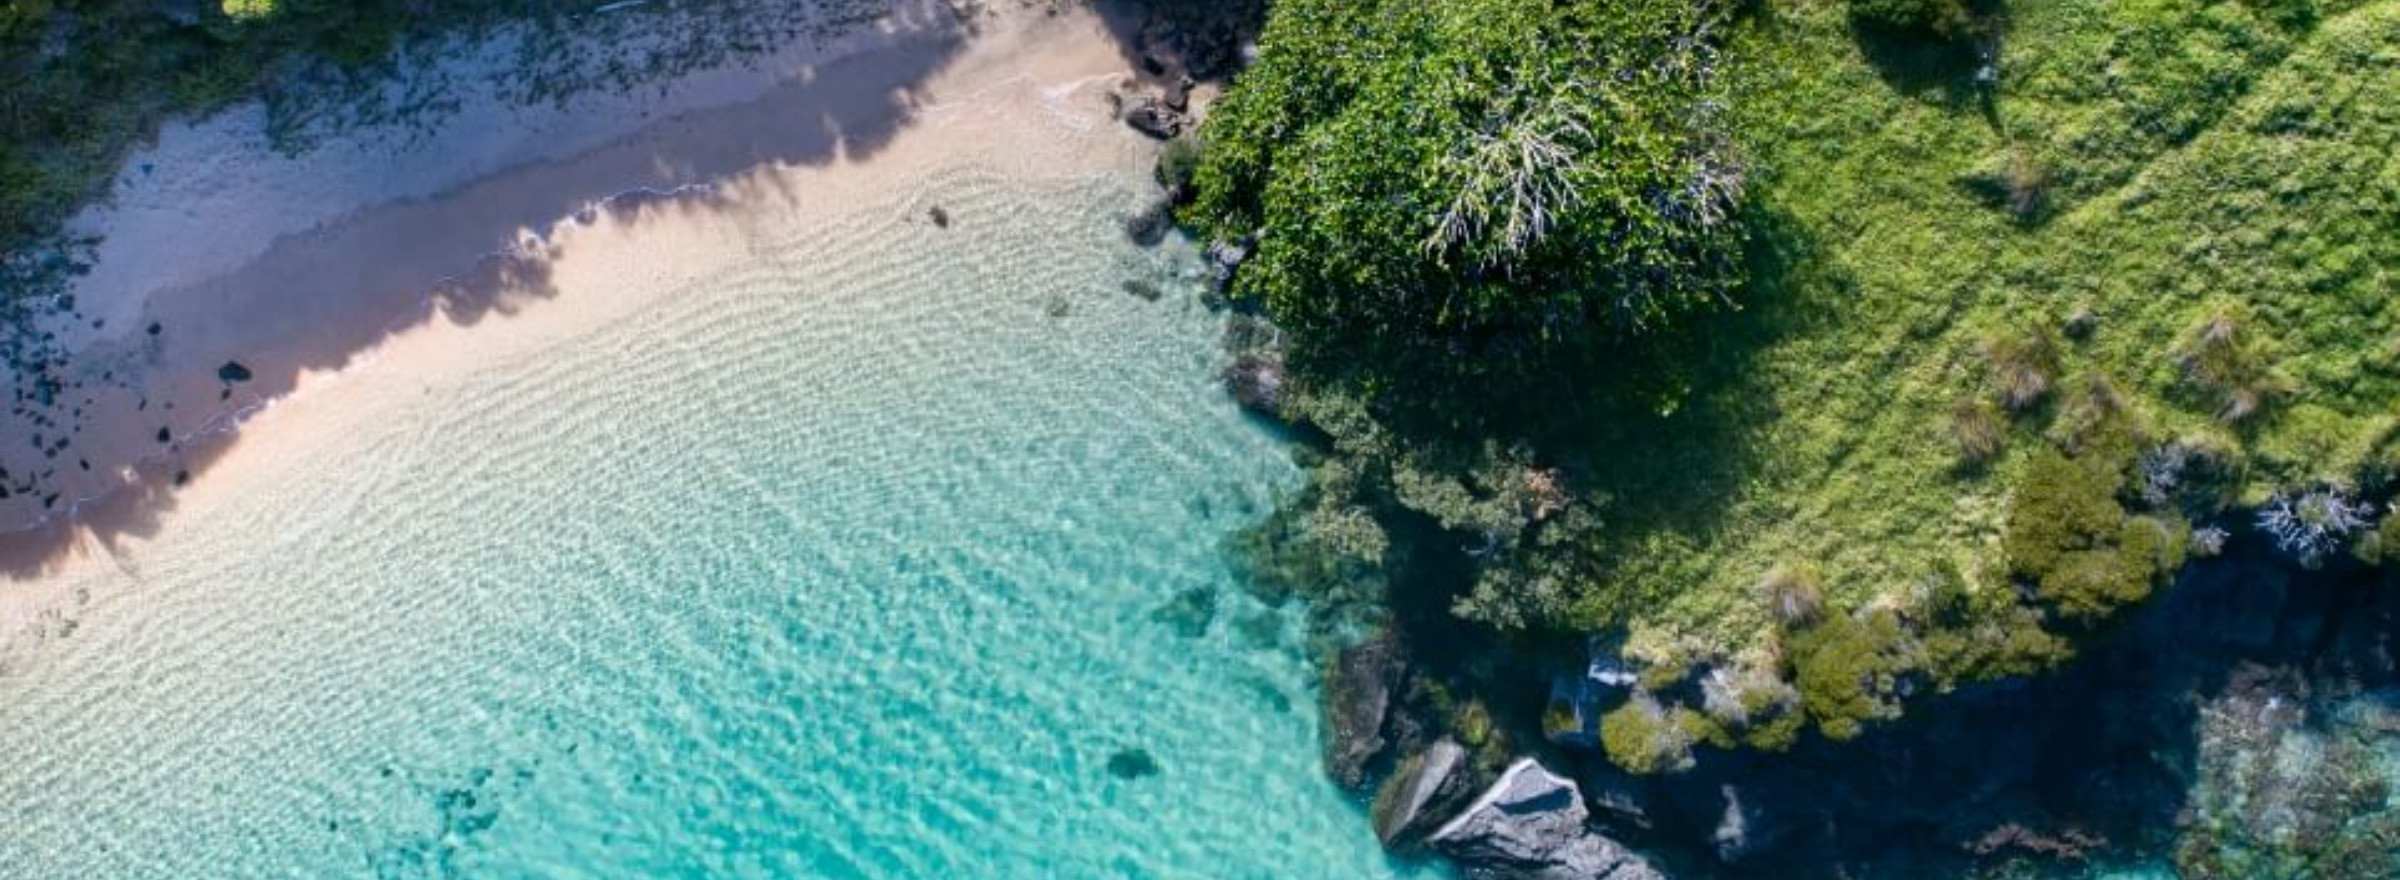 Lord Howe Island Beaches